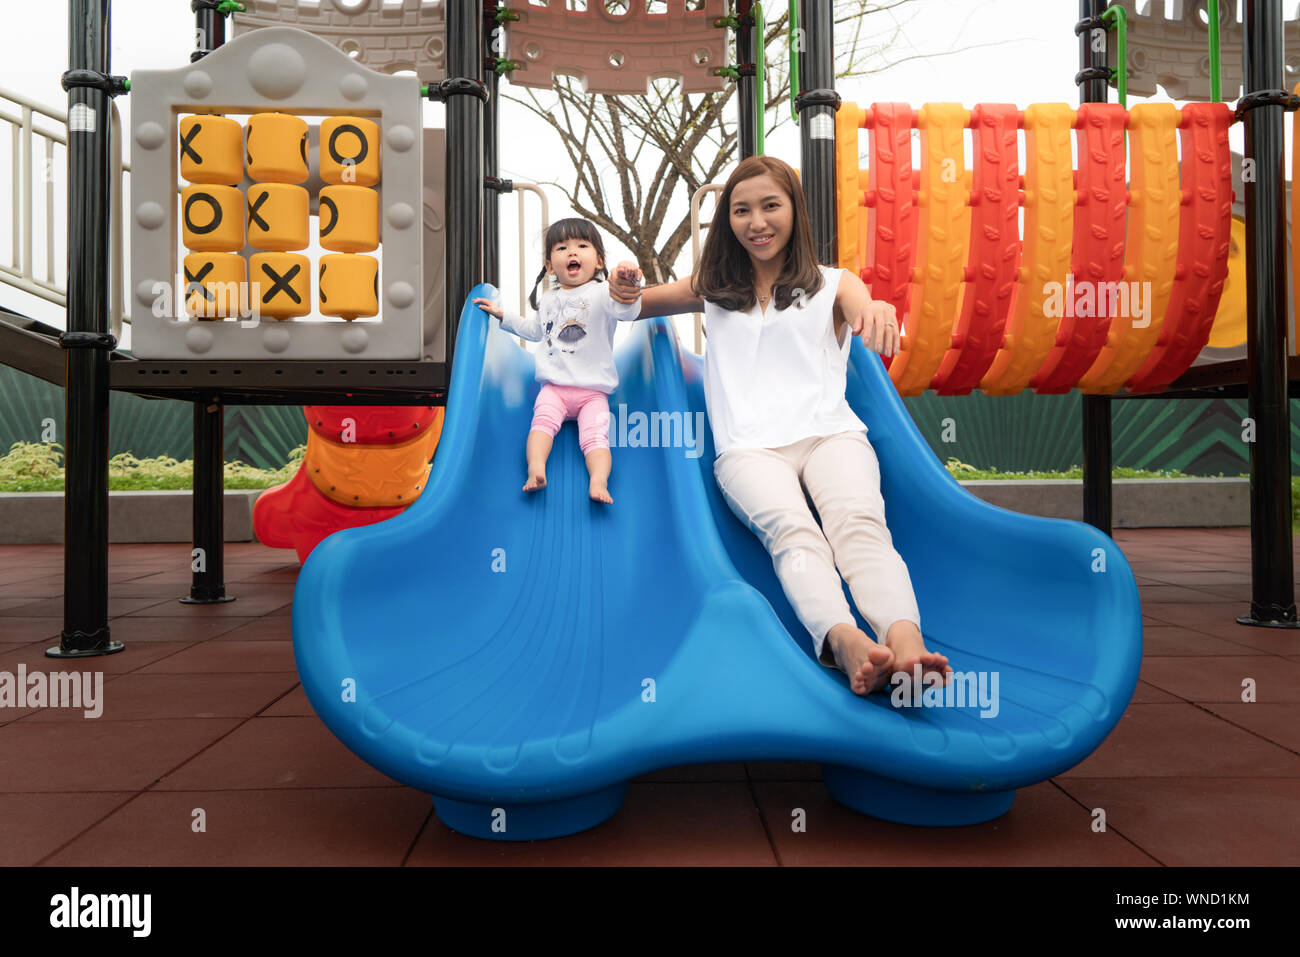 La mère et la fille sont asiatiques de bonheur et de plaisir à jouer ensemble dans l'équipement glisser jeux pour enfants, avec bonheur pleinement actuellement. Concept de famille heureuse. Banque D'Images